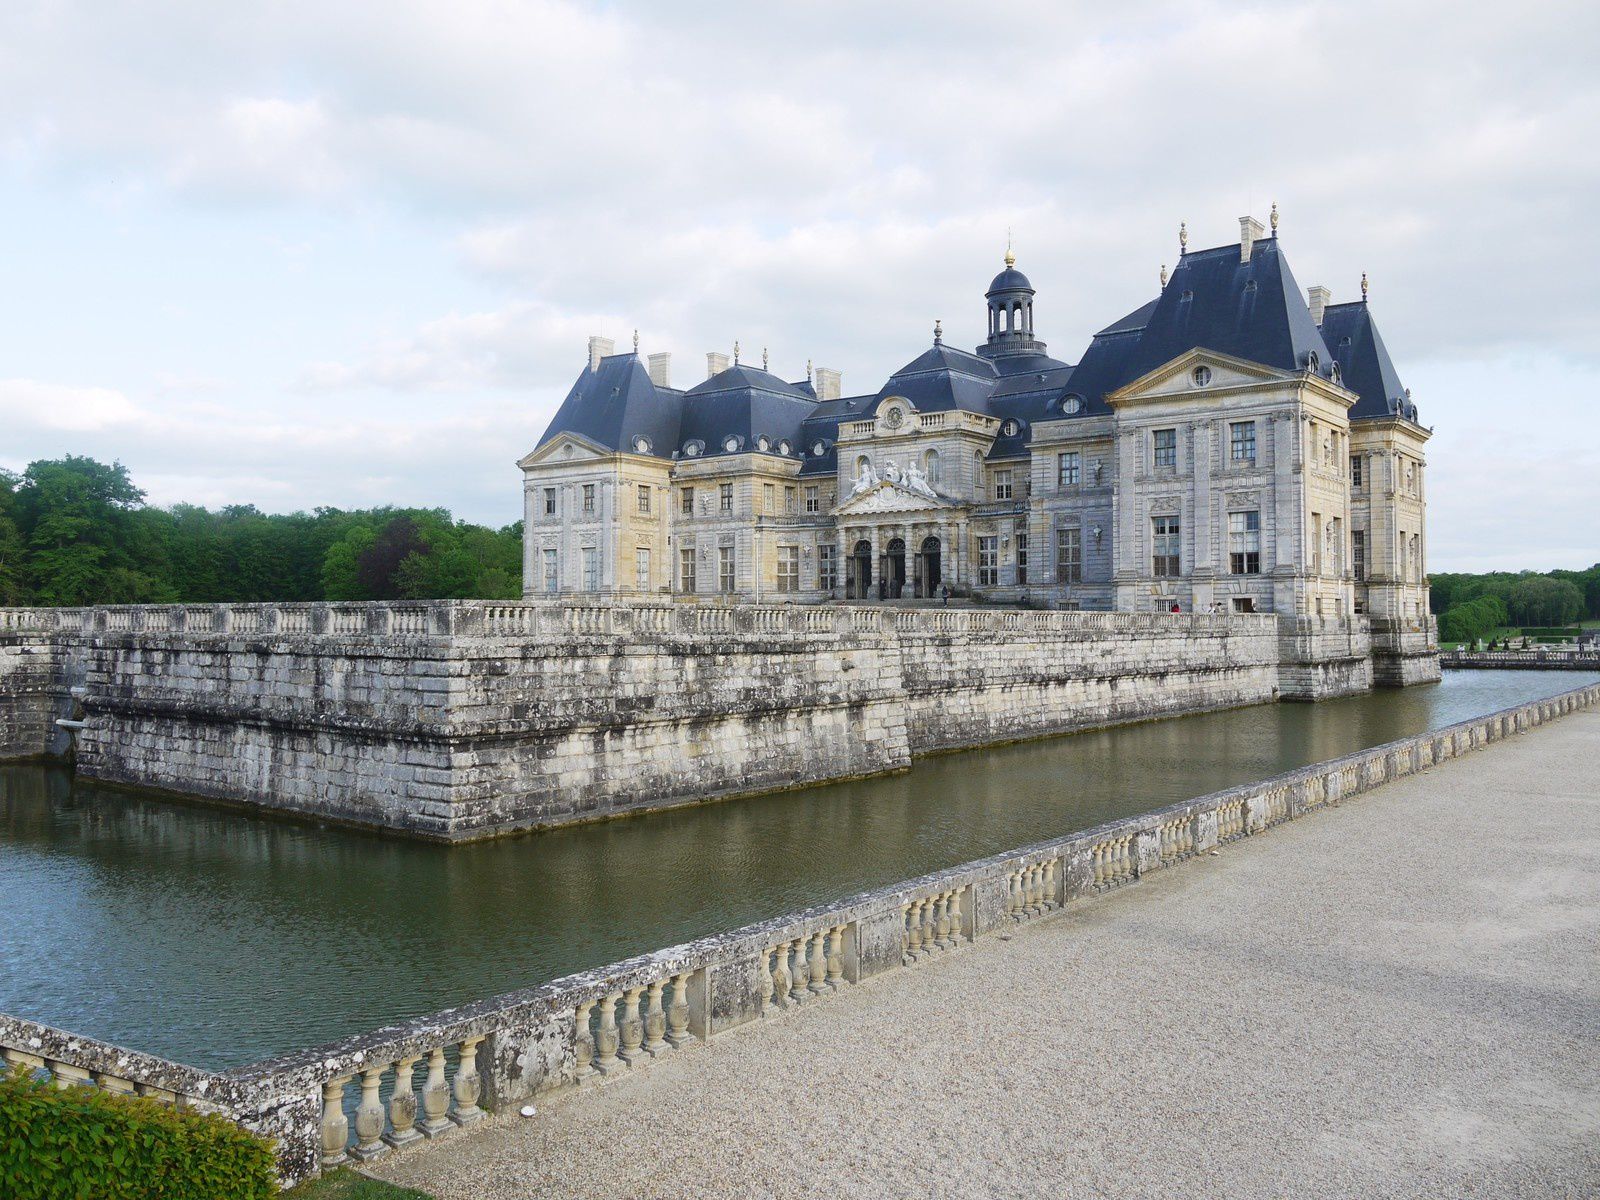 Virée au Château de Vaux-le-Vicomte (avec soirée aux chandelles)